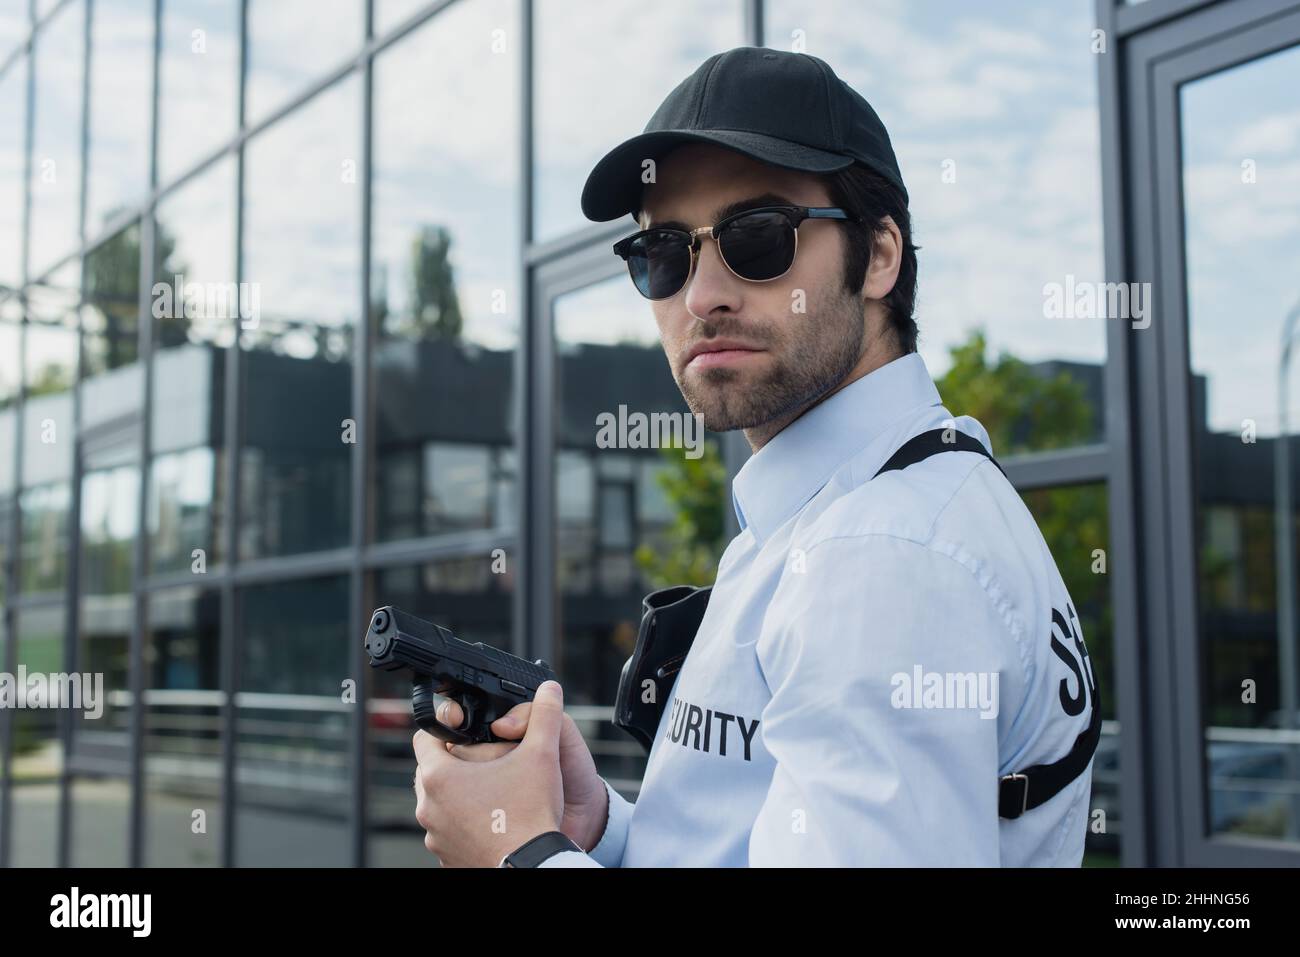 uomo di sicurezza in berretto nero e occhiali da sole che reggono la pistola all'aperto Foto Stock